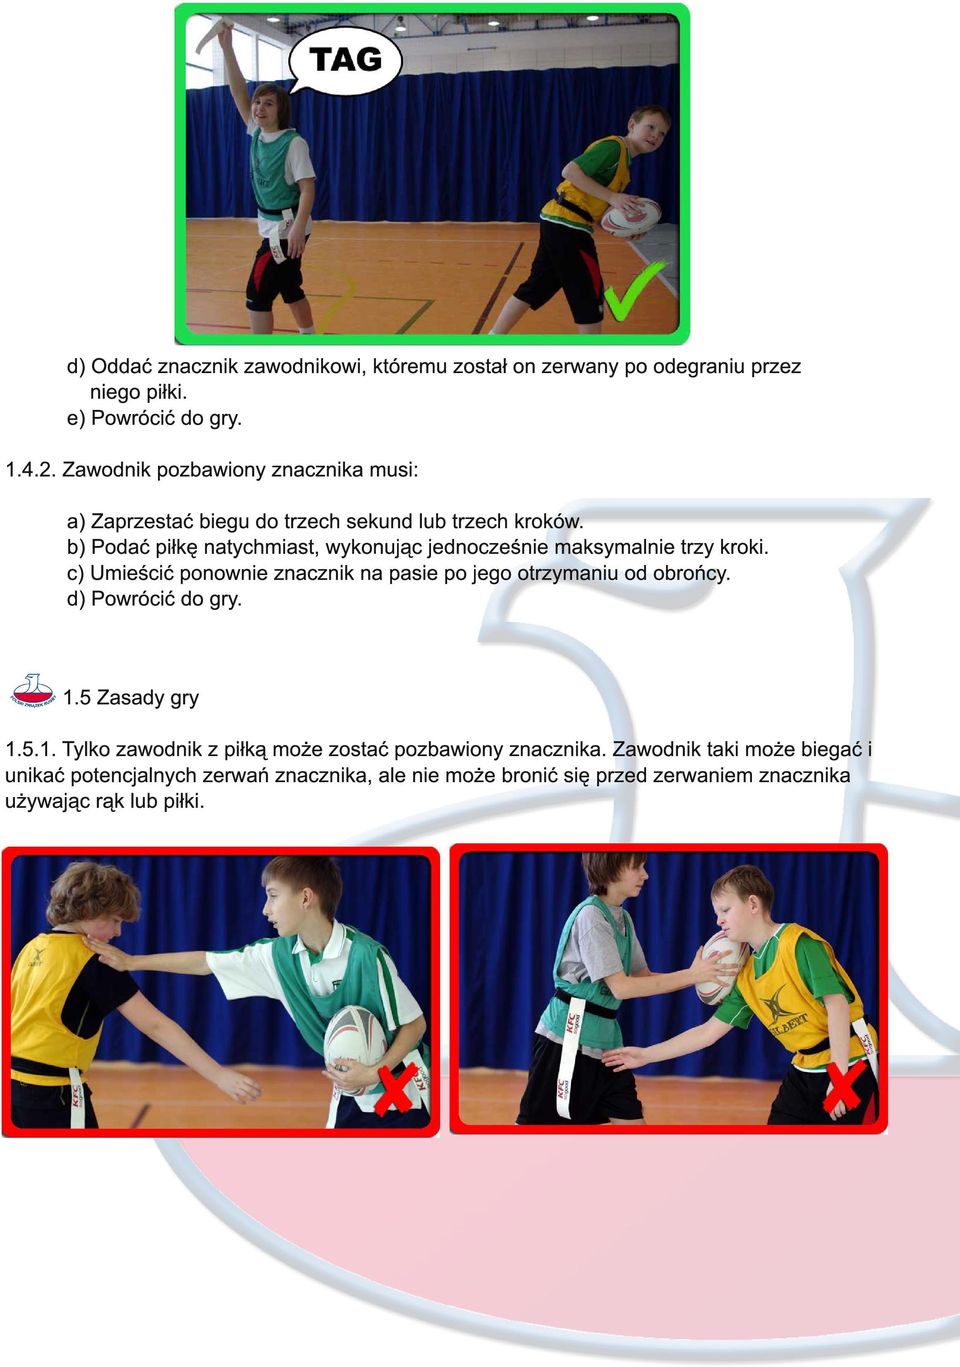 b) Podać piłkę natychmiast, wykonując jednocześnie maksymalnie trzy kroki. c) Umieścić ponownie znacznik na pasie po jego otrzymaniu od obrońcy.